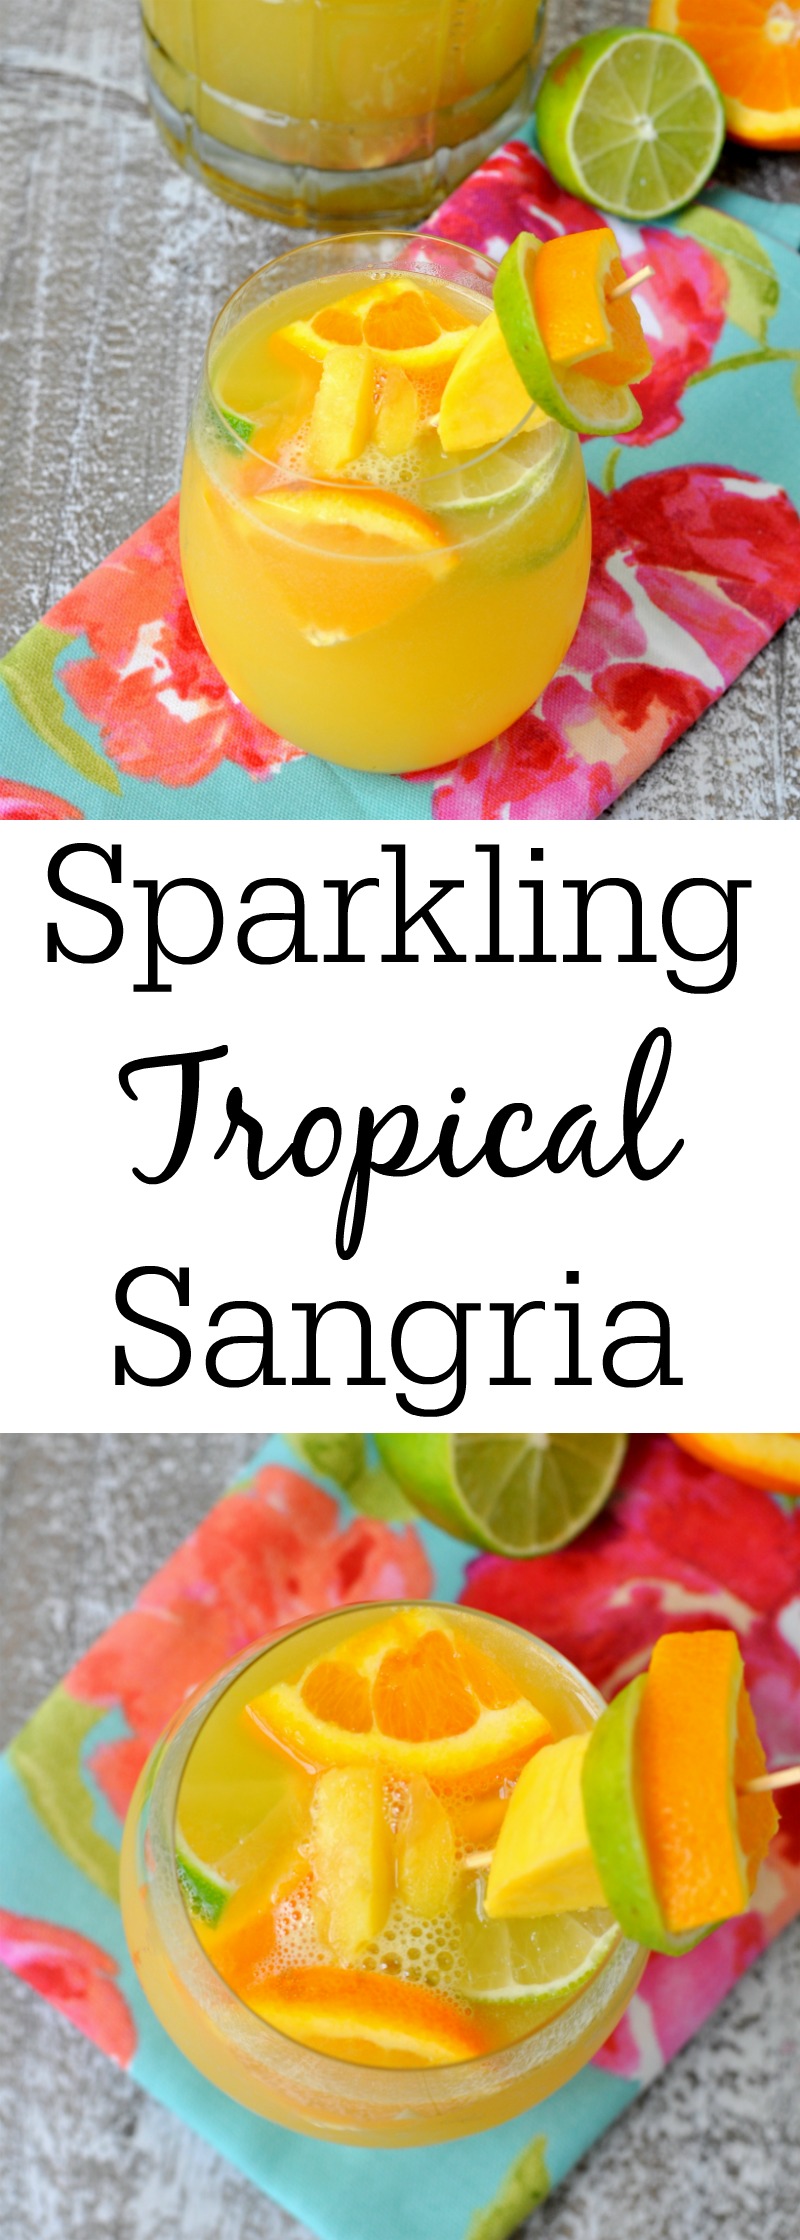 Sparkling Tropical Sangria